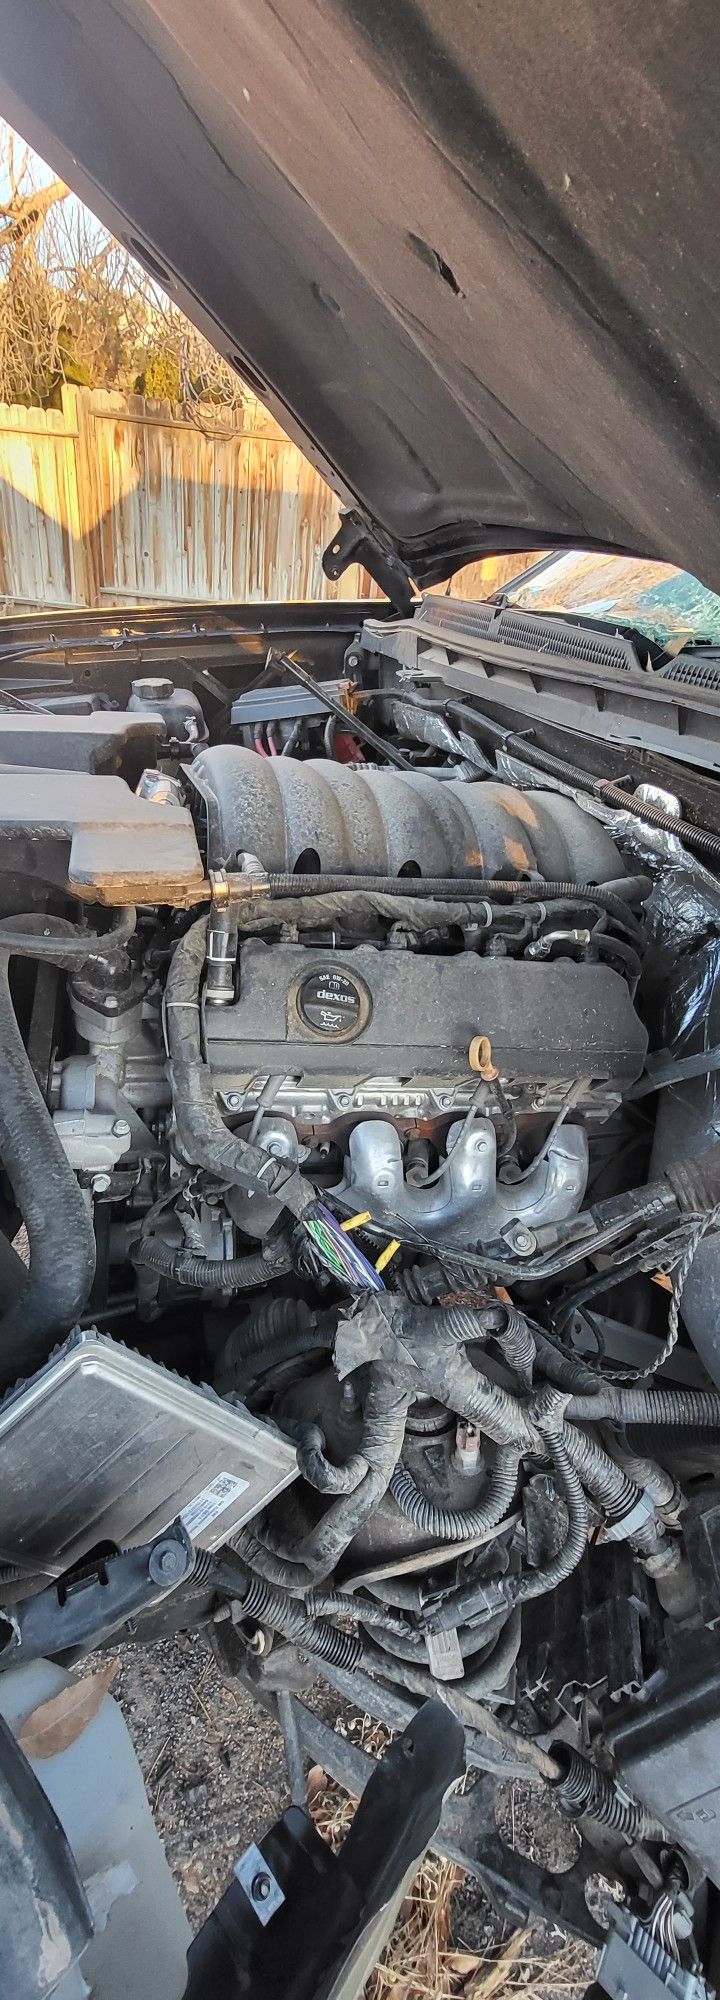 2015 GMC Sierra 1500  5.3L Gen V LT1 L83 Engine+6L80 TRANS Complete Pull Out